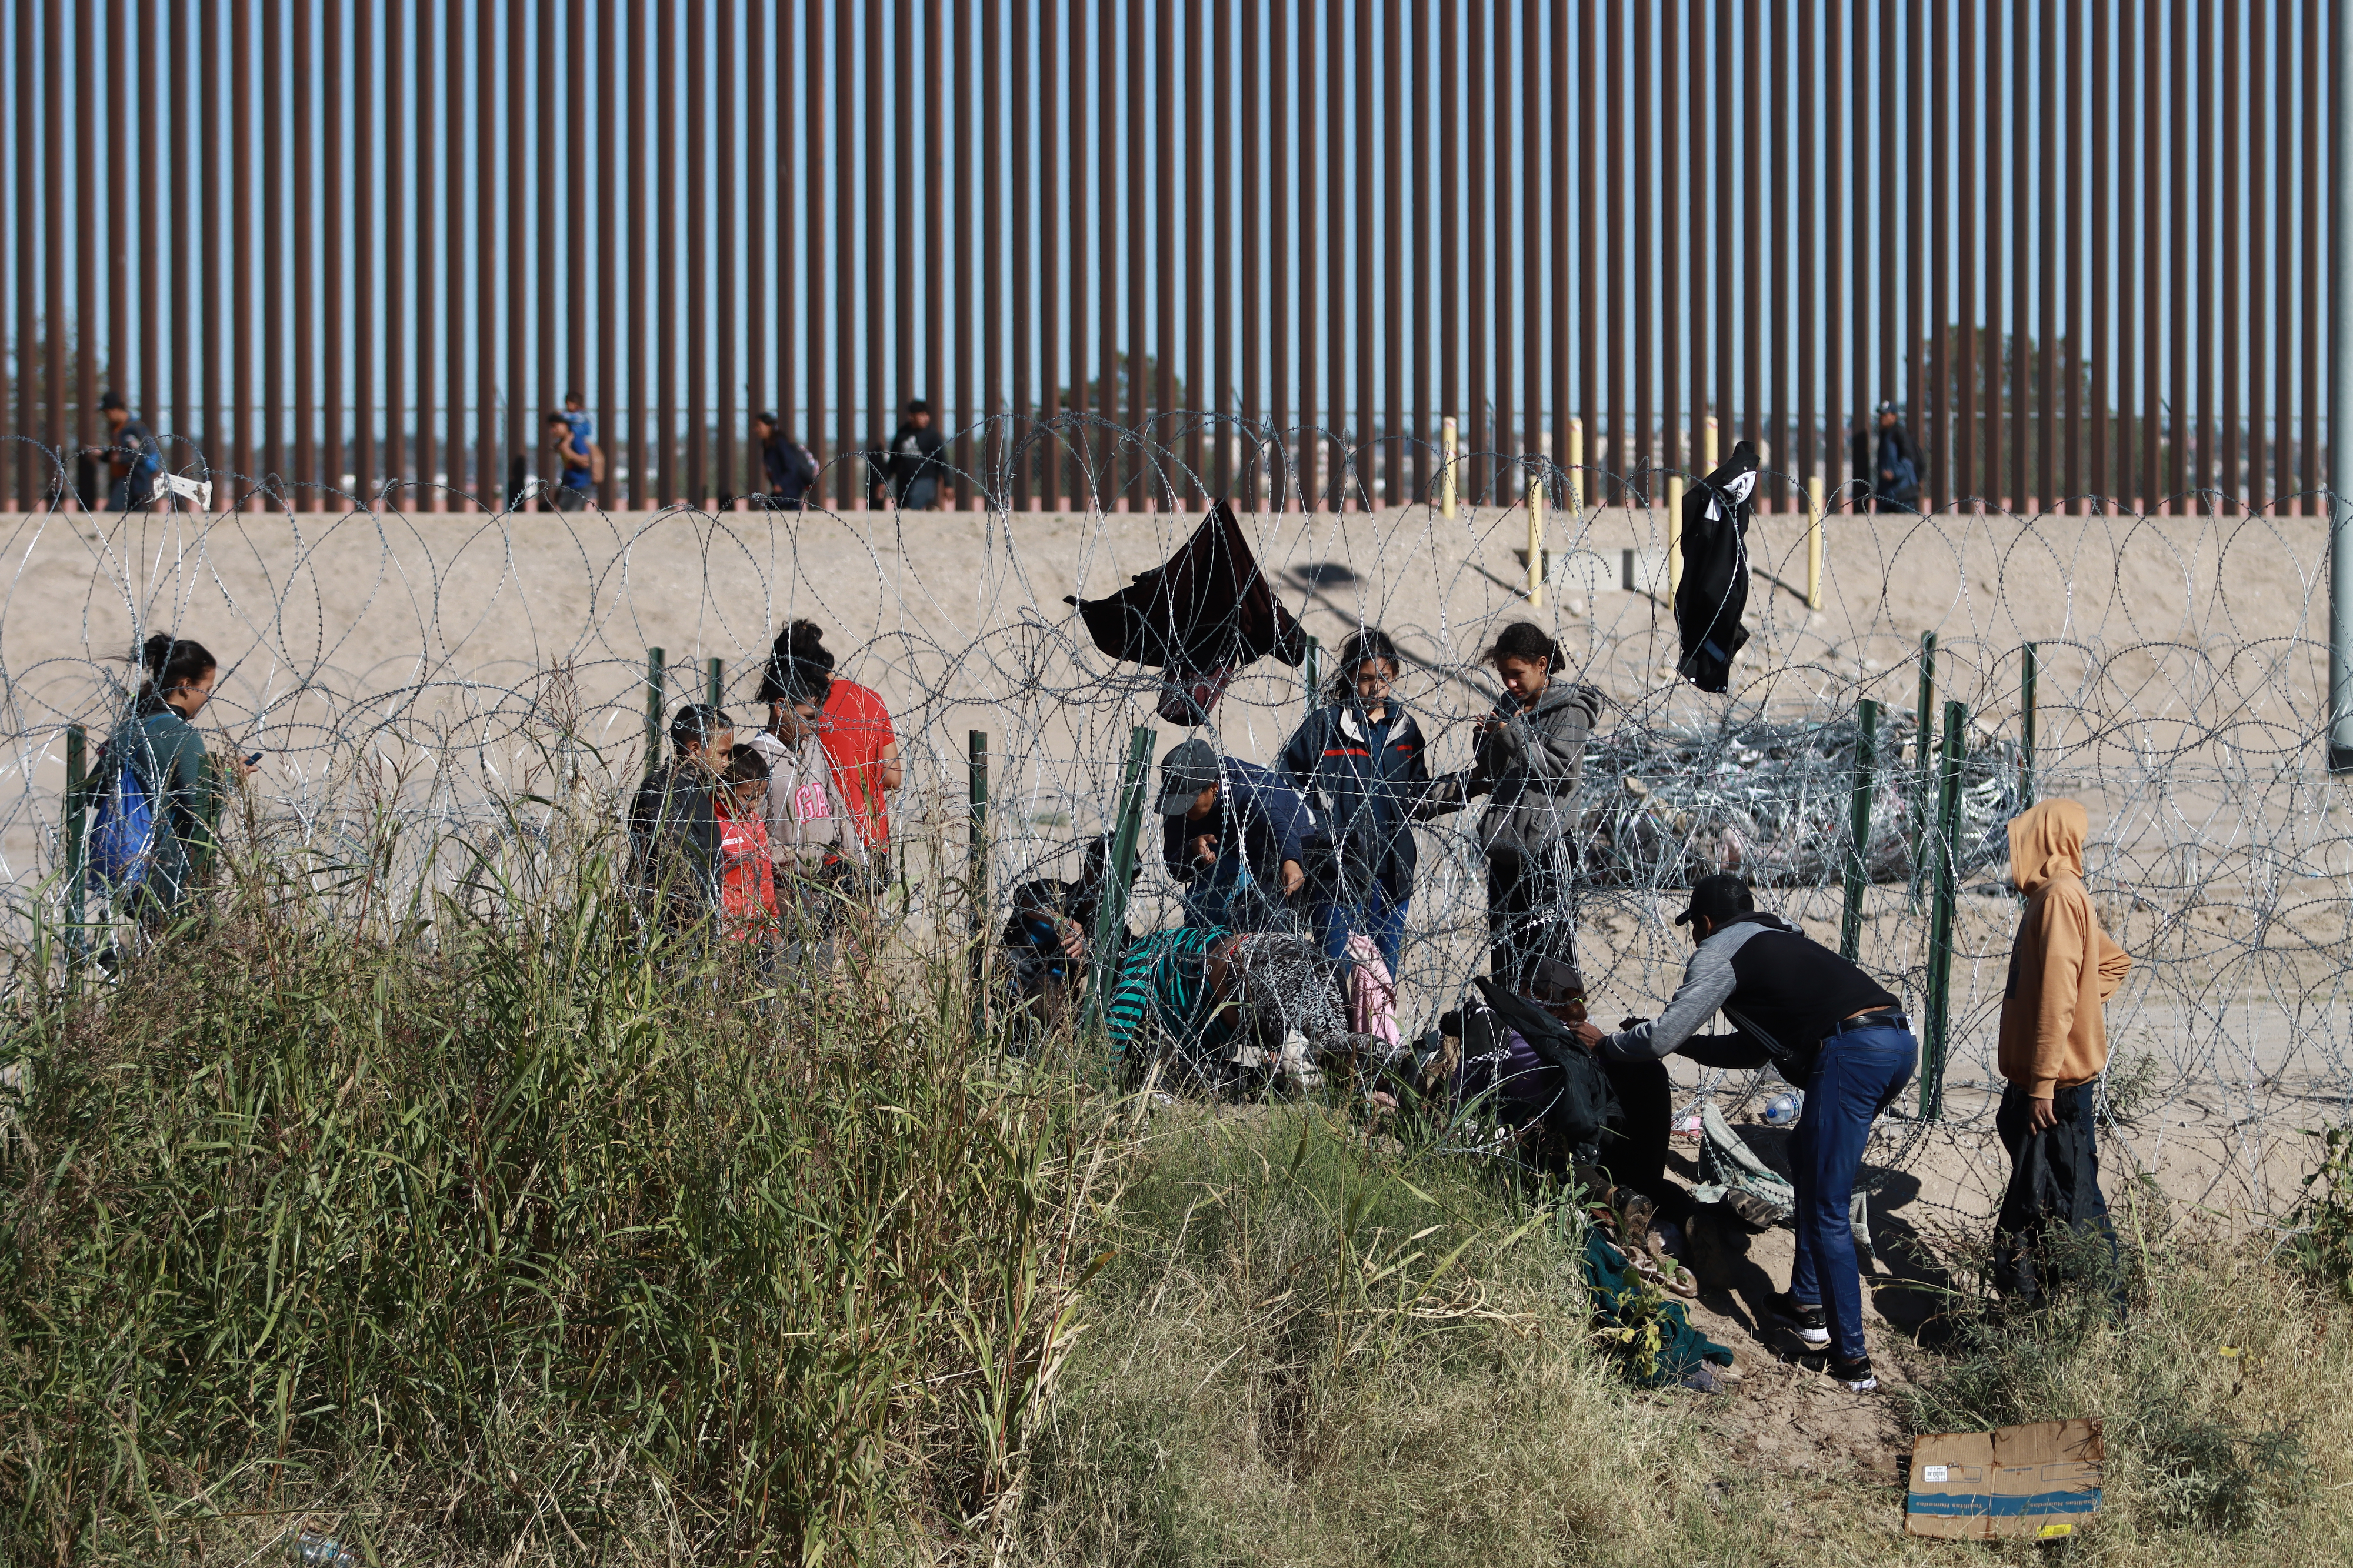 Migrantes de la caravana que atraviesa México en la frontera estadounidense. (Foto Prensa Libre: EFE/ Luis Torres)